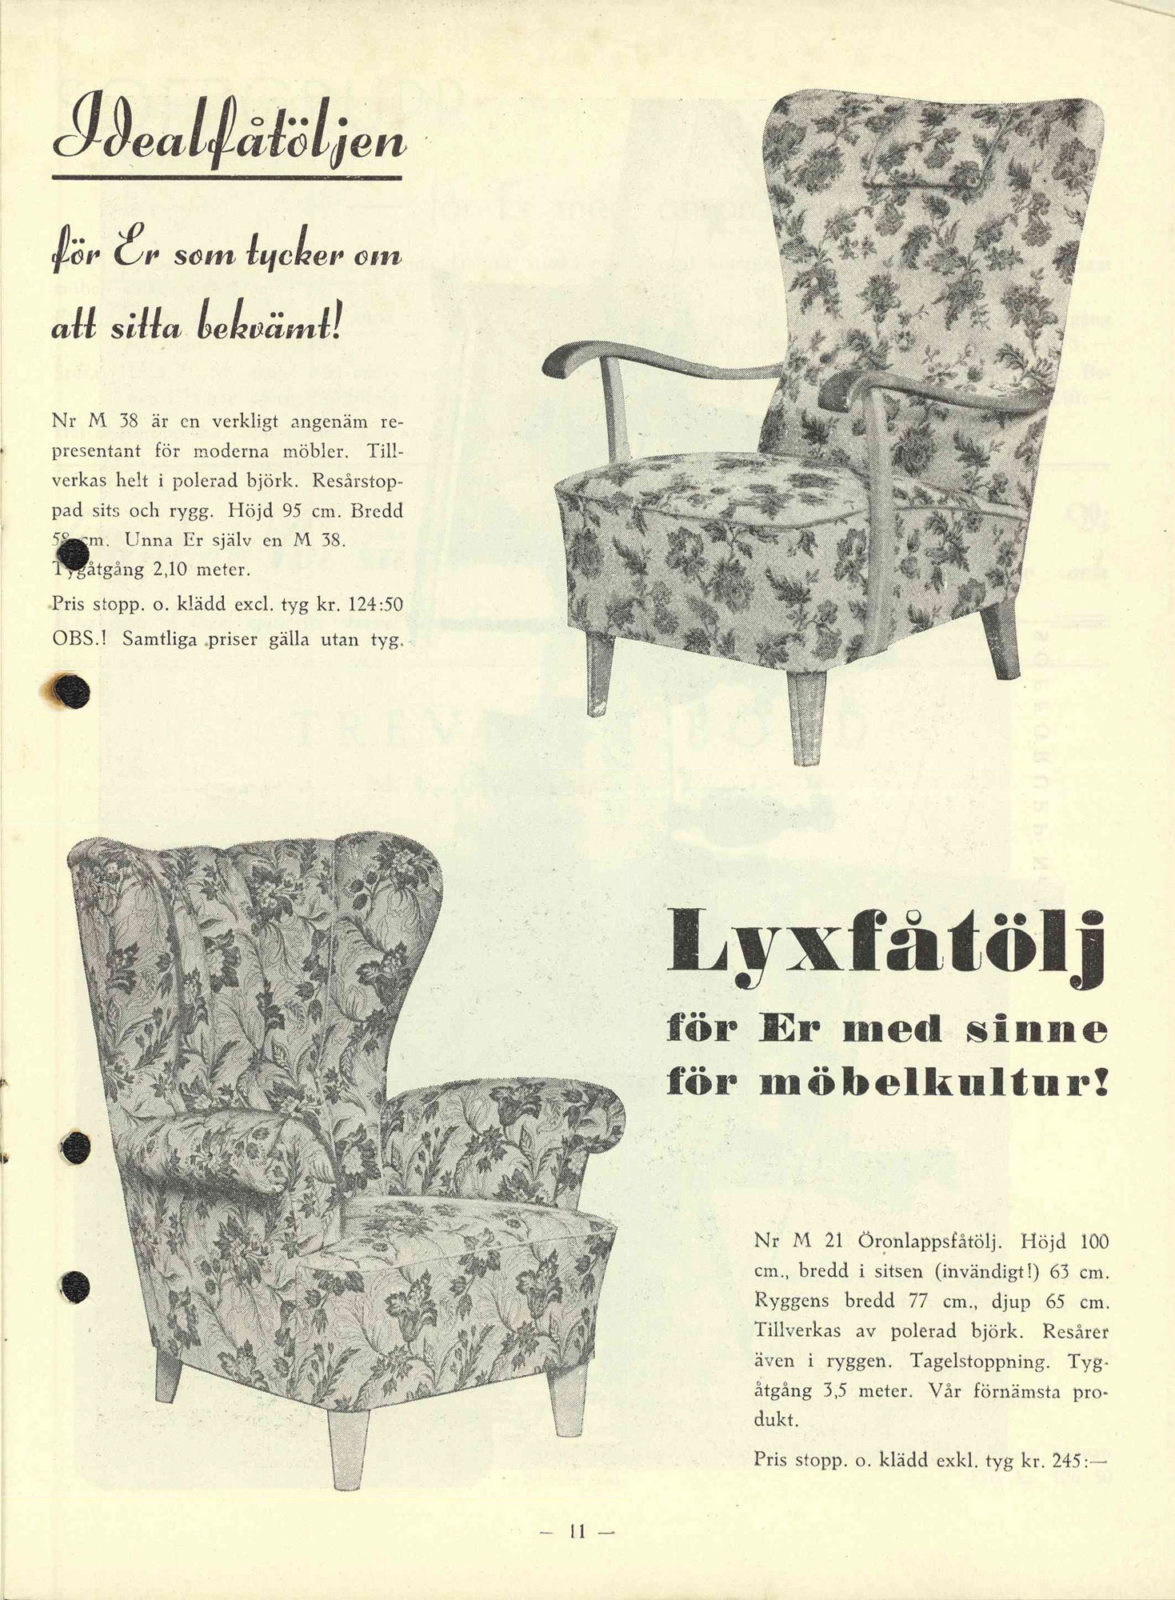 Sida ur katalog från IKEA med bilder av två blommiga fåtöljer,1948-49.